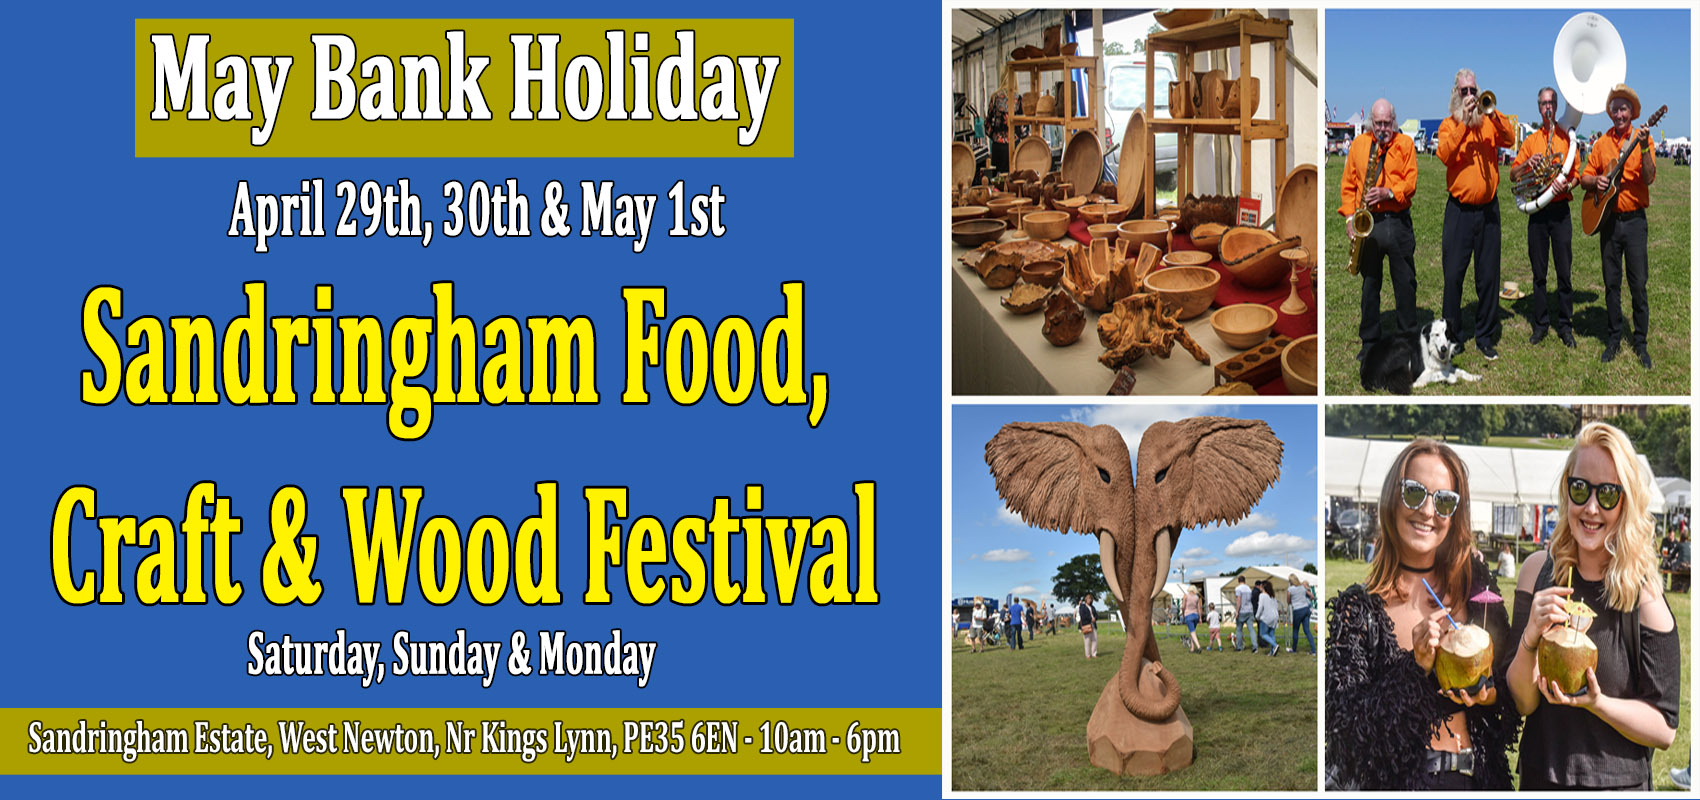 Sandringham Food, Craft & Wood Festival